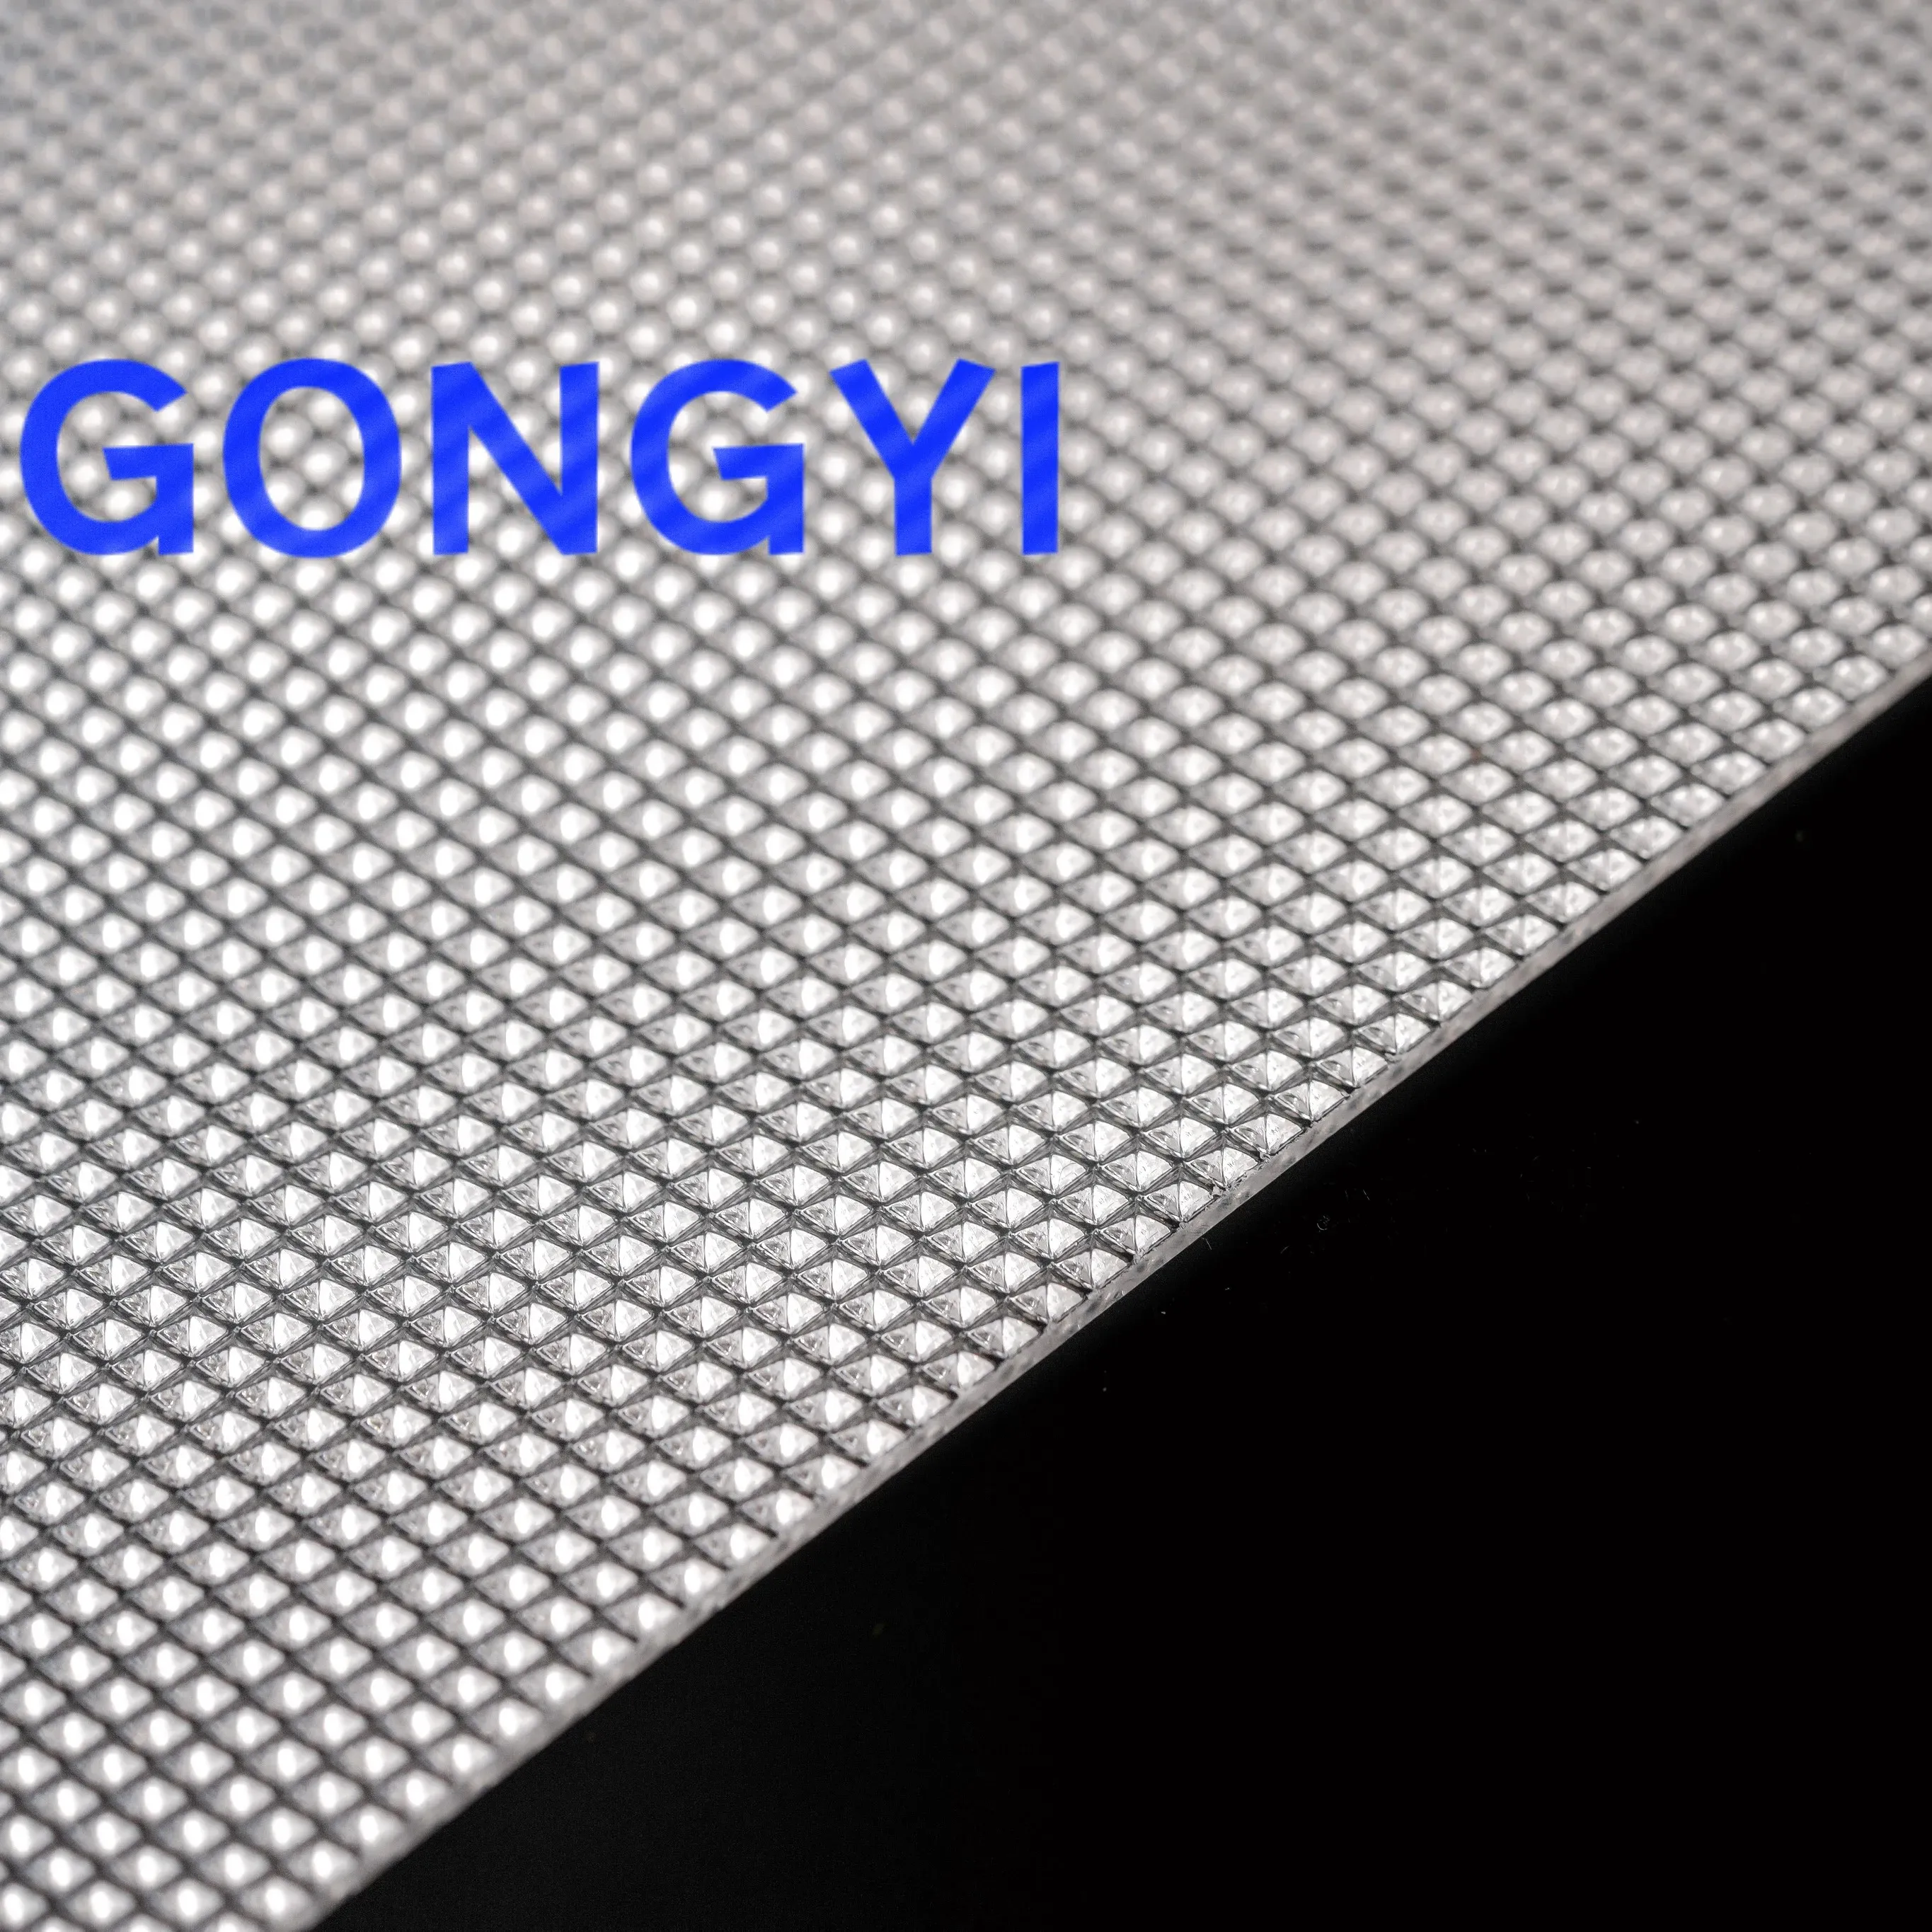 GONGYI Difusor de folha LED acrílico prismático com textura de pirâmide invertida transparente de 1.22m x 2.44m